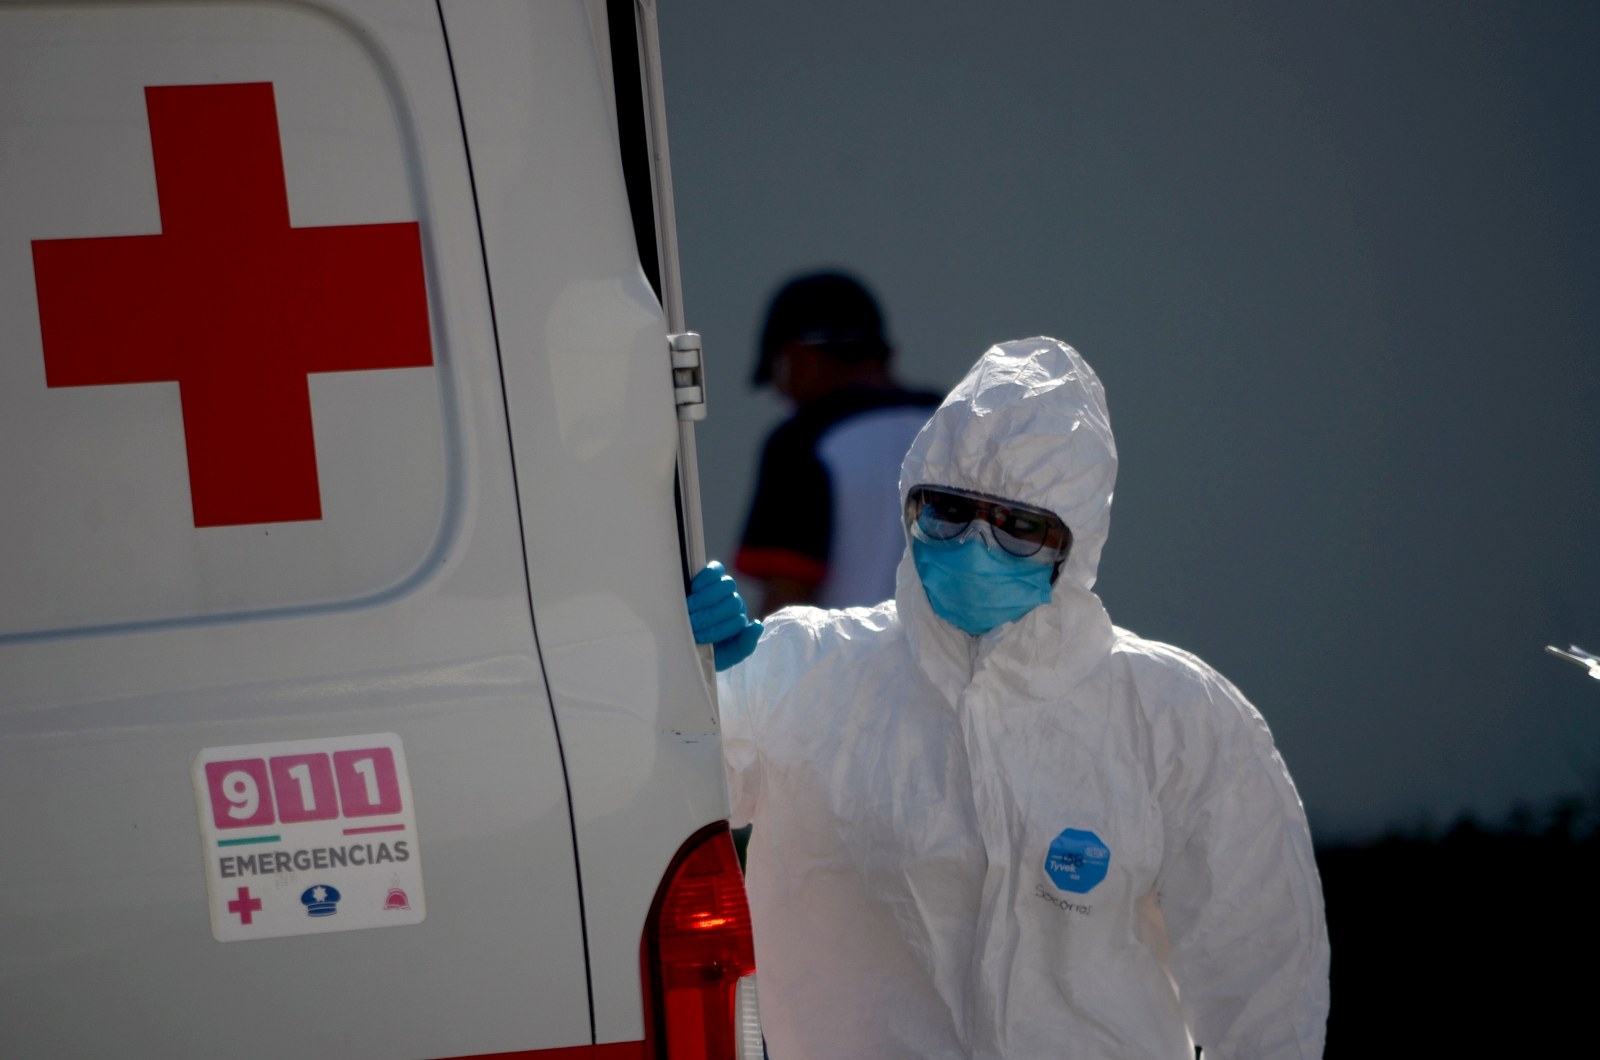 Cruz Roja atiende a 15 pacientes con COVID-19 en Cancún al día, revela